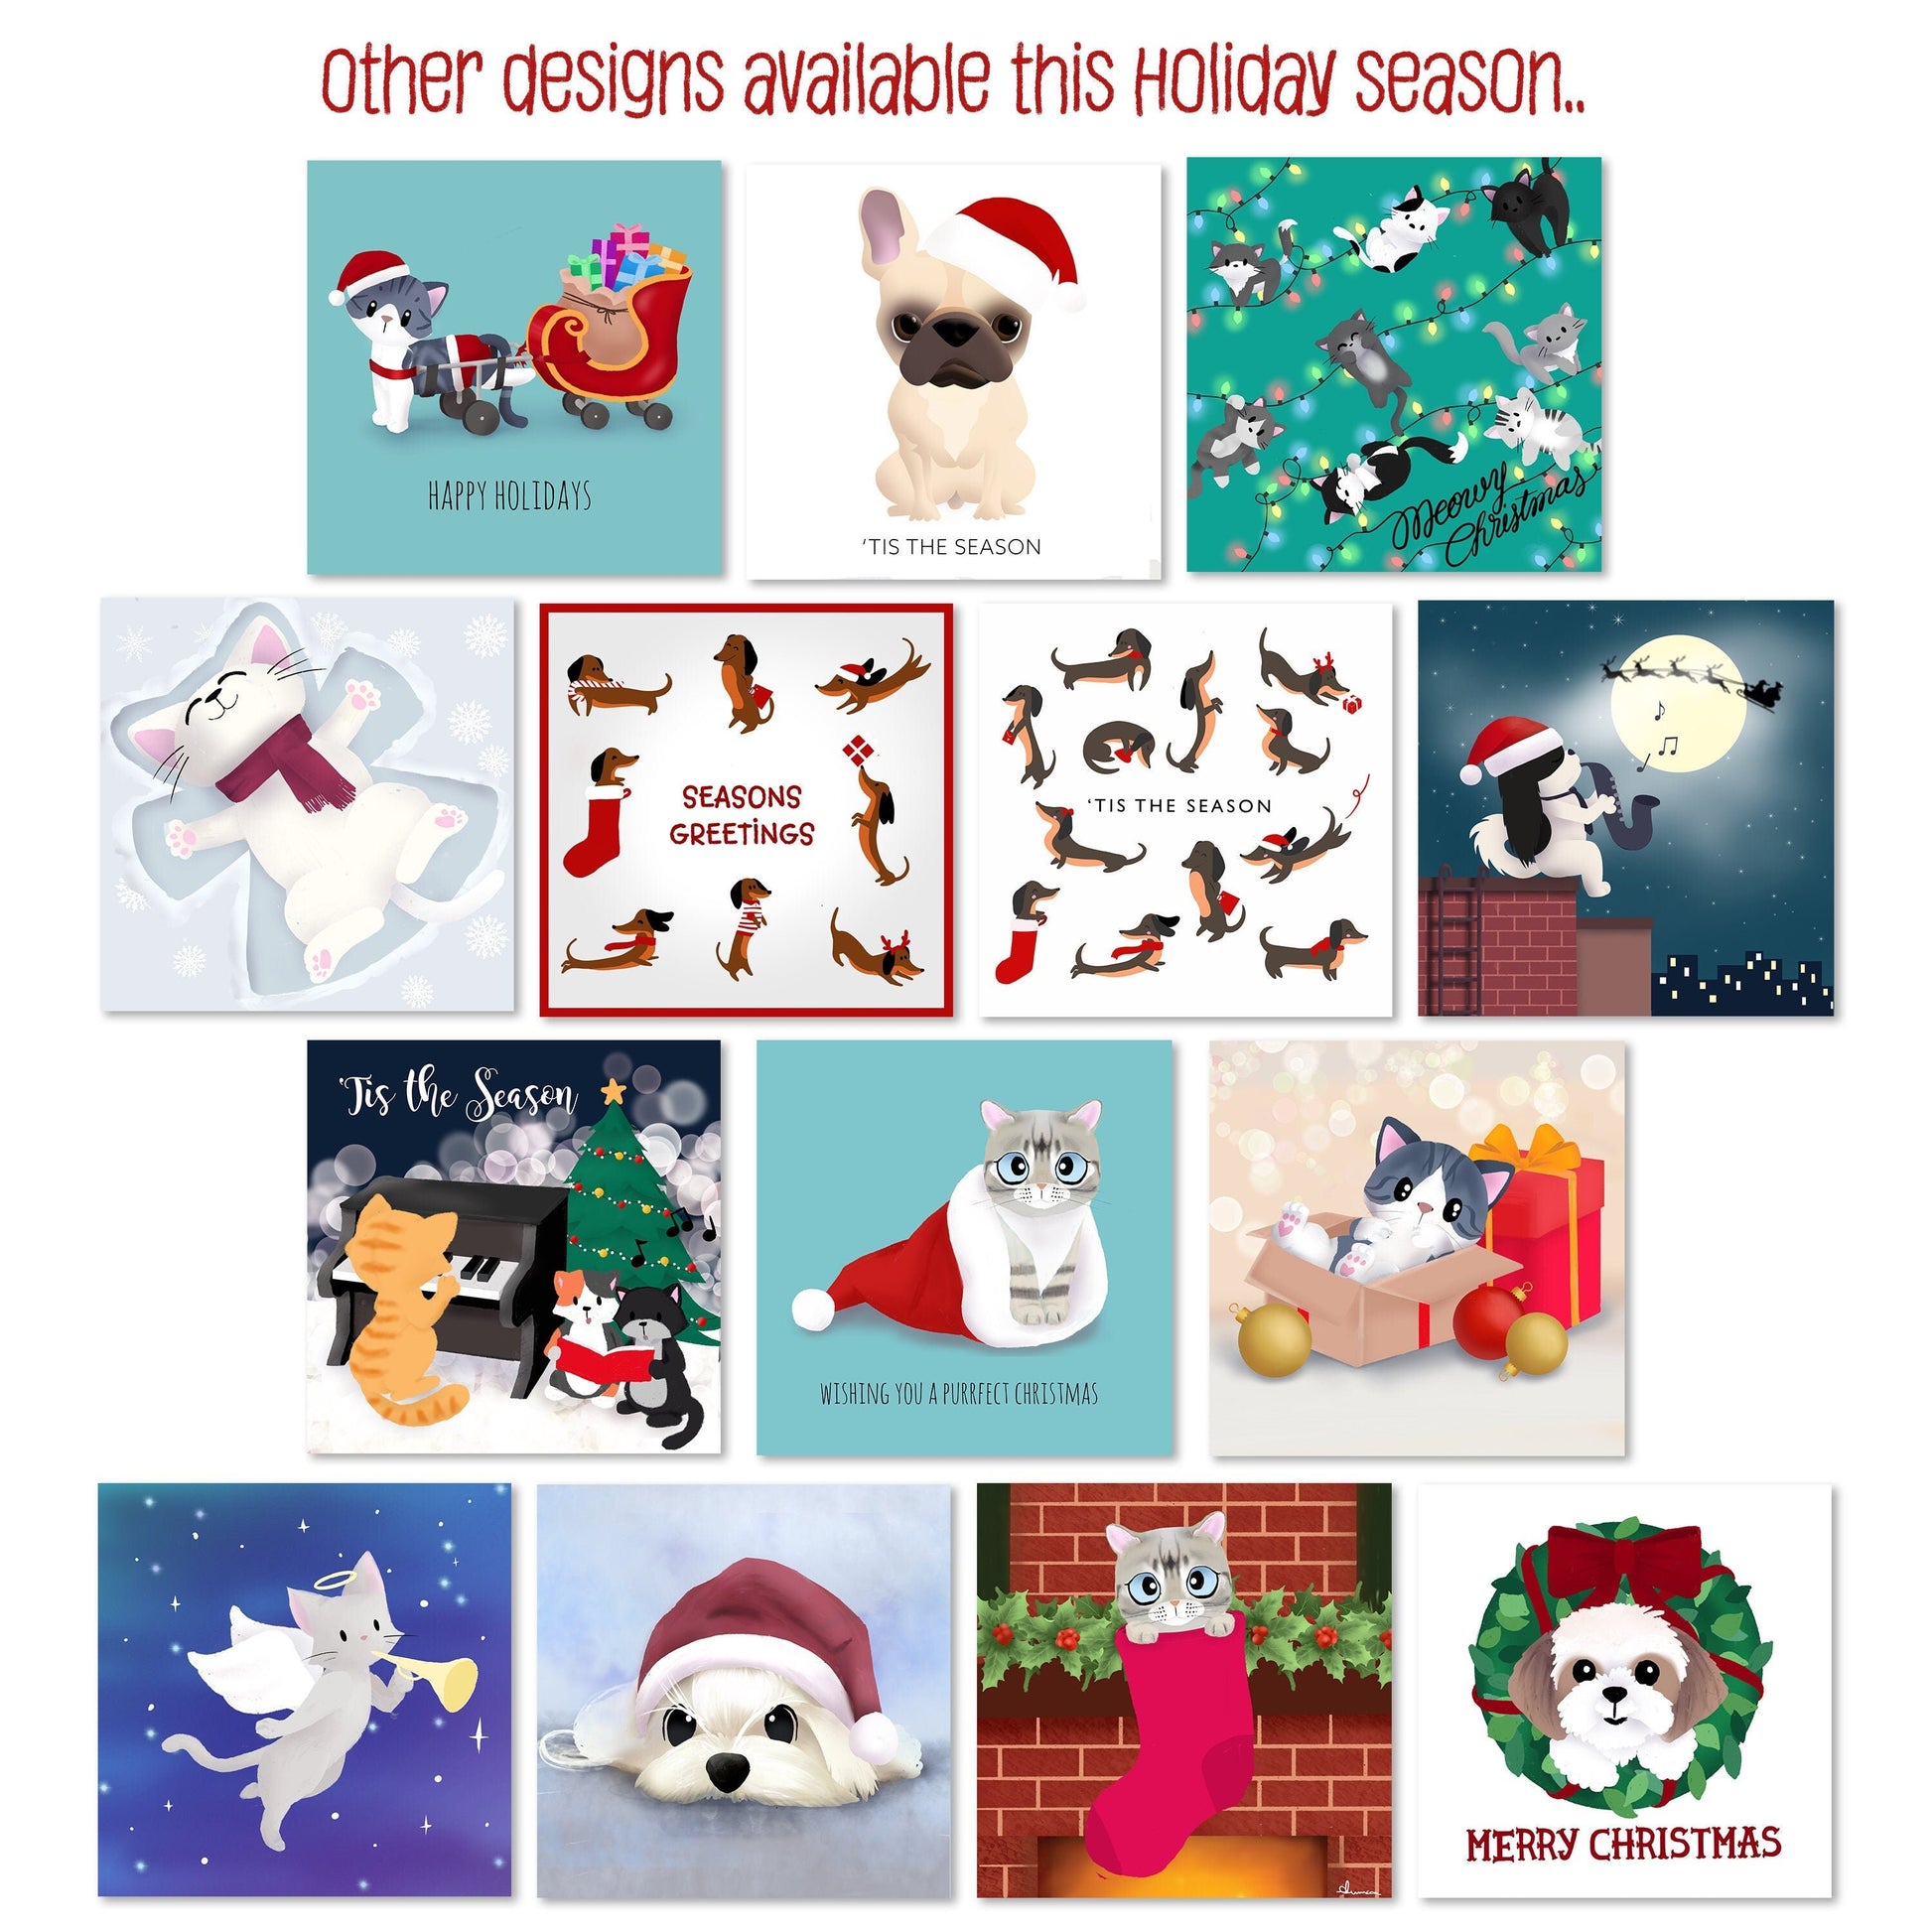 Holiday Greeting Card - Xmas Dachshunds (Christmas Greeting Cards, Charity Christmas Card, Cute Dog Card), Greeting Cards/Postcards, Greeting & Note Cards